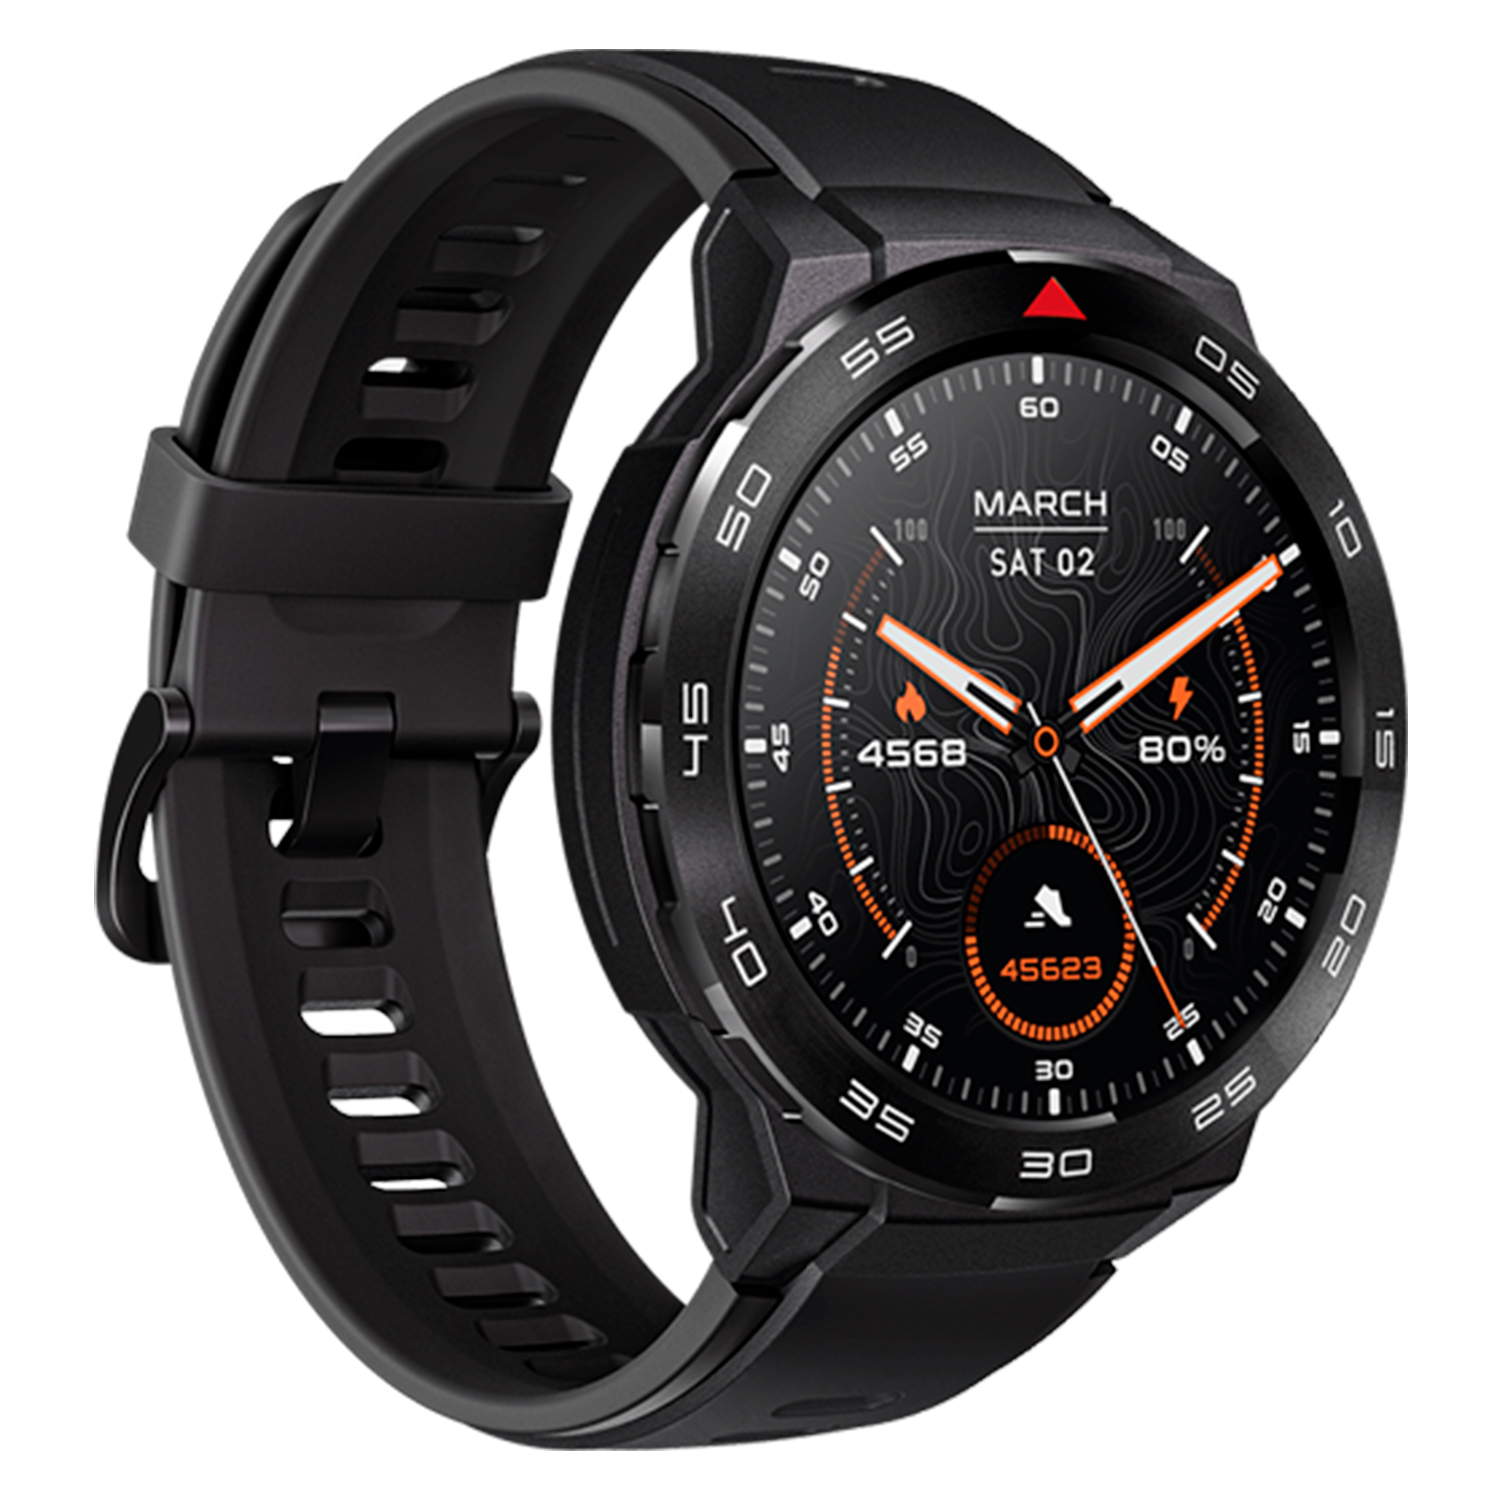 Smartwatch Mibro GS Pro XPAW013 - Preto
